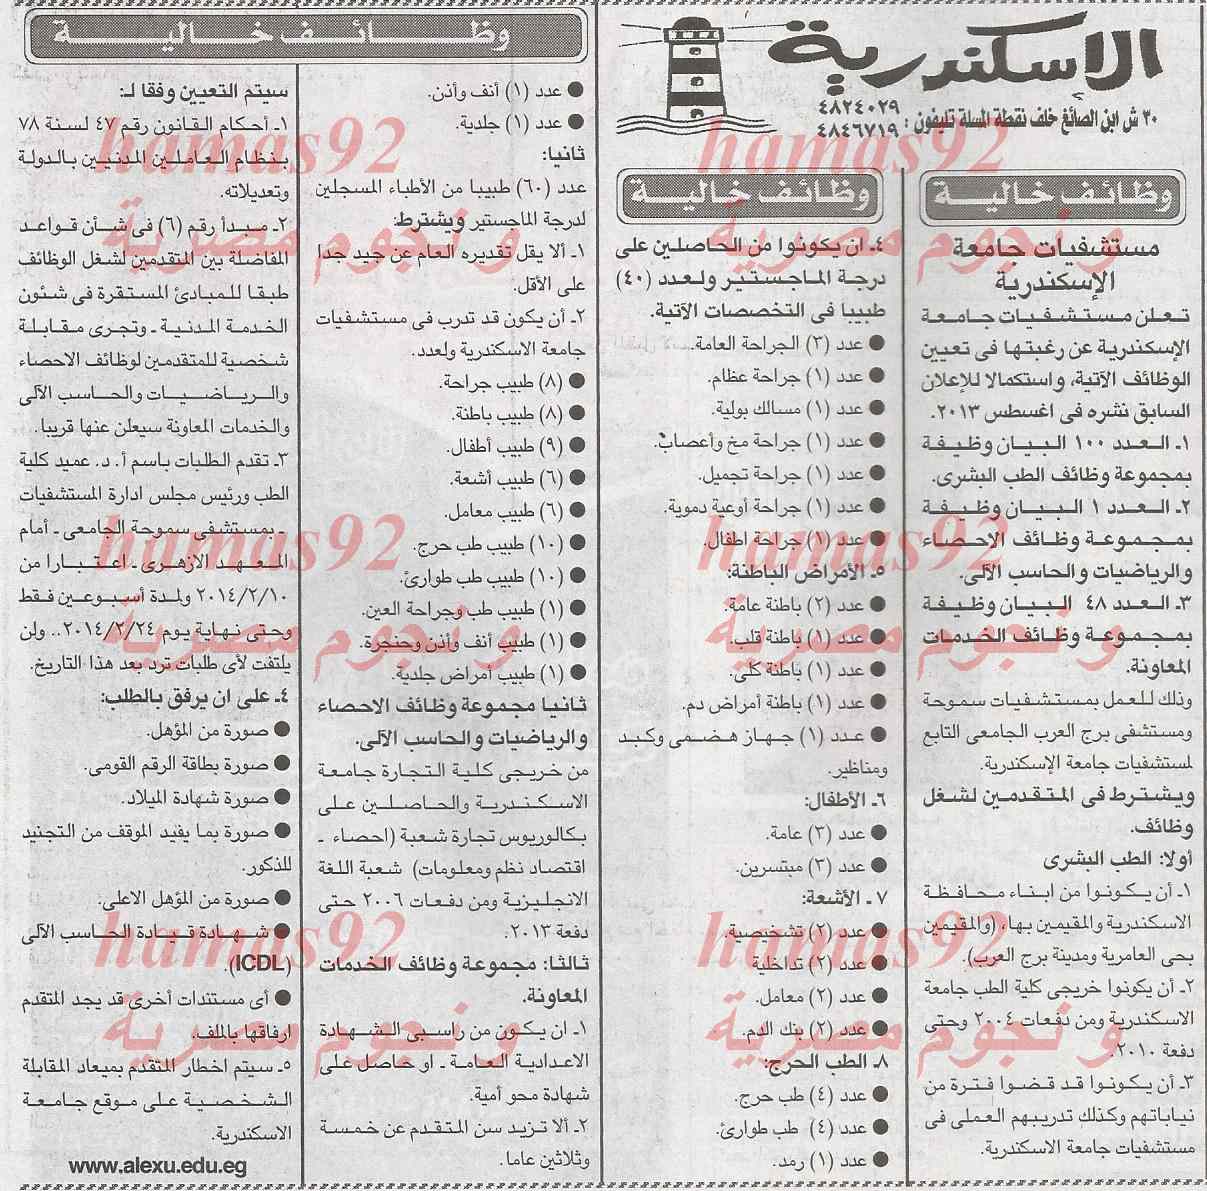 وظائف جريدة الاخبار اليوم الاربعاء 5-2-2014 , وظائف خالية اليوم 5 فبراير 2014